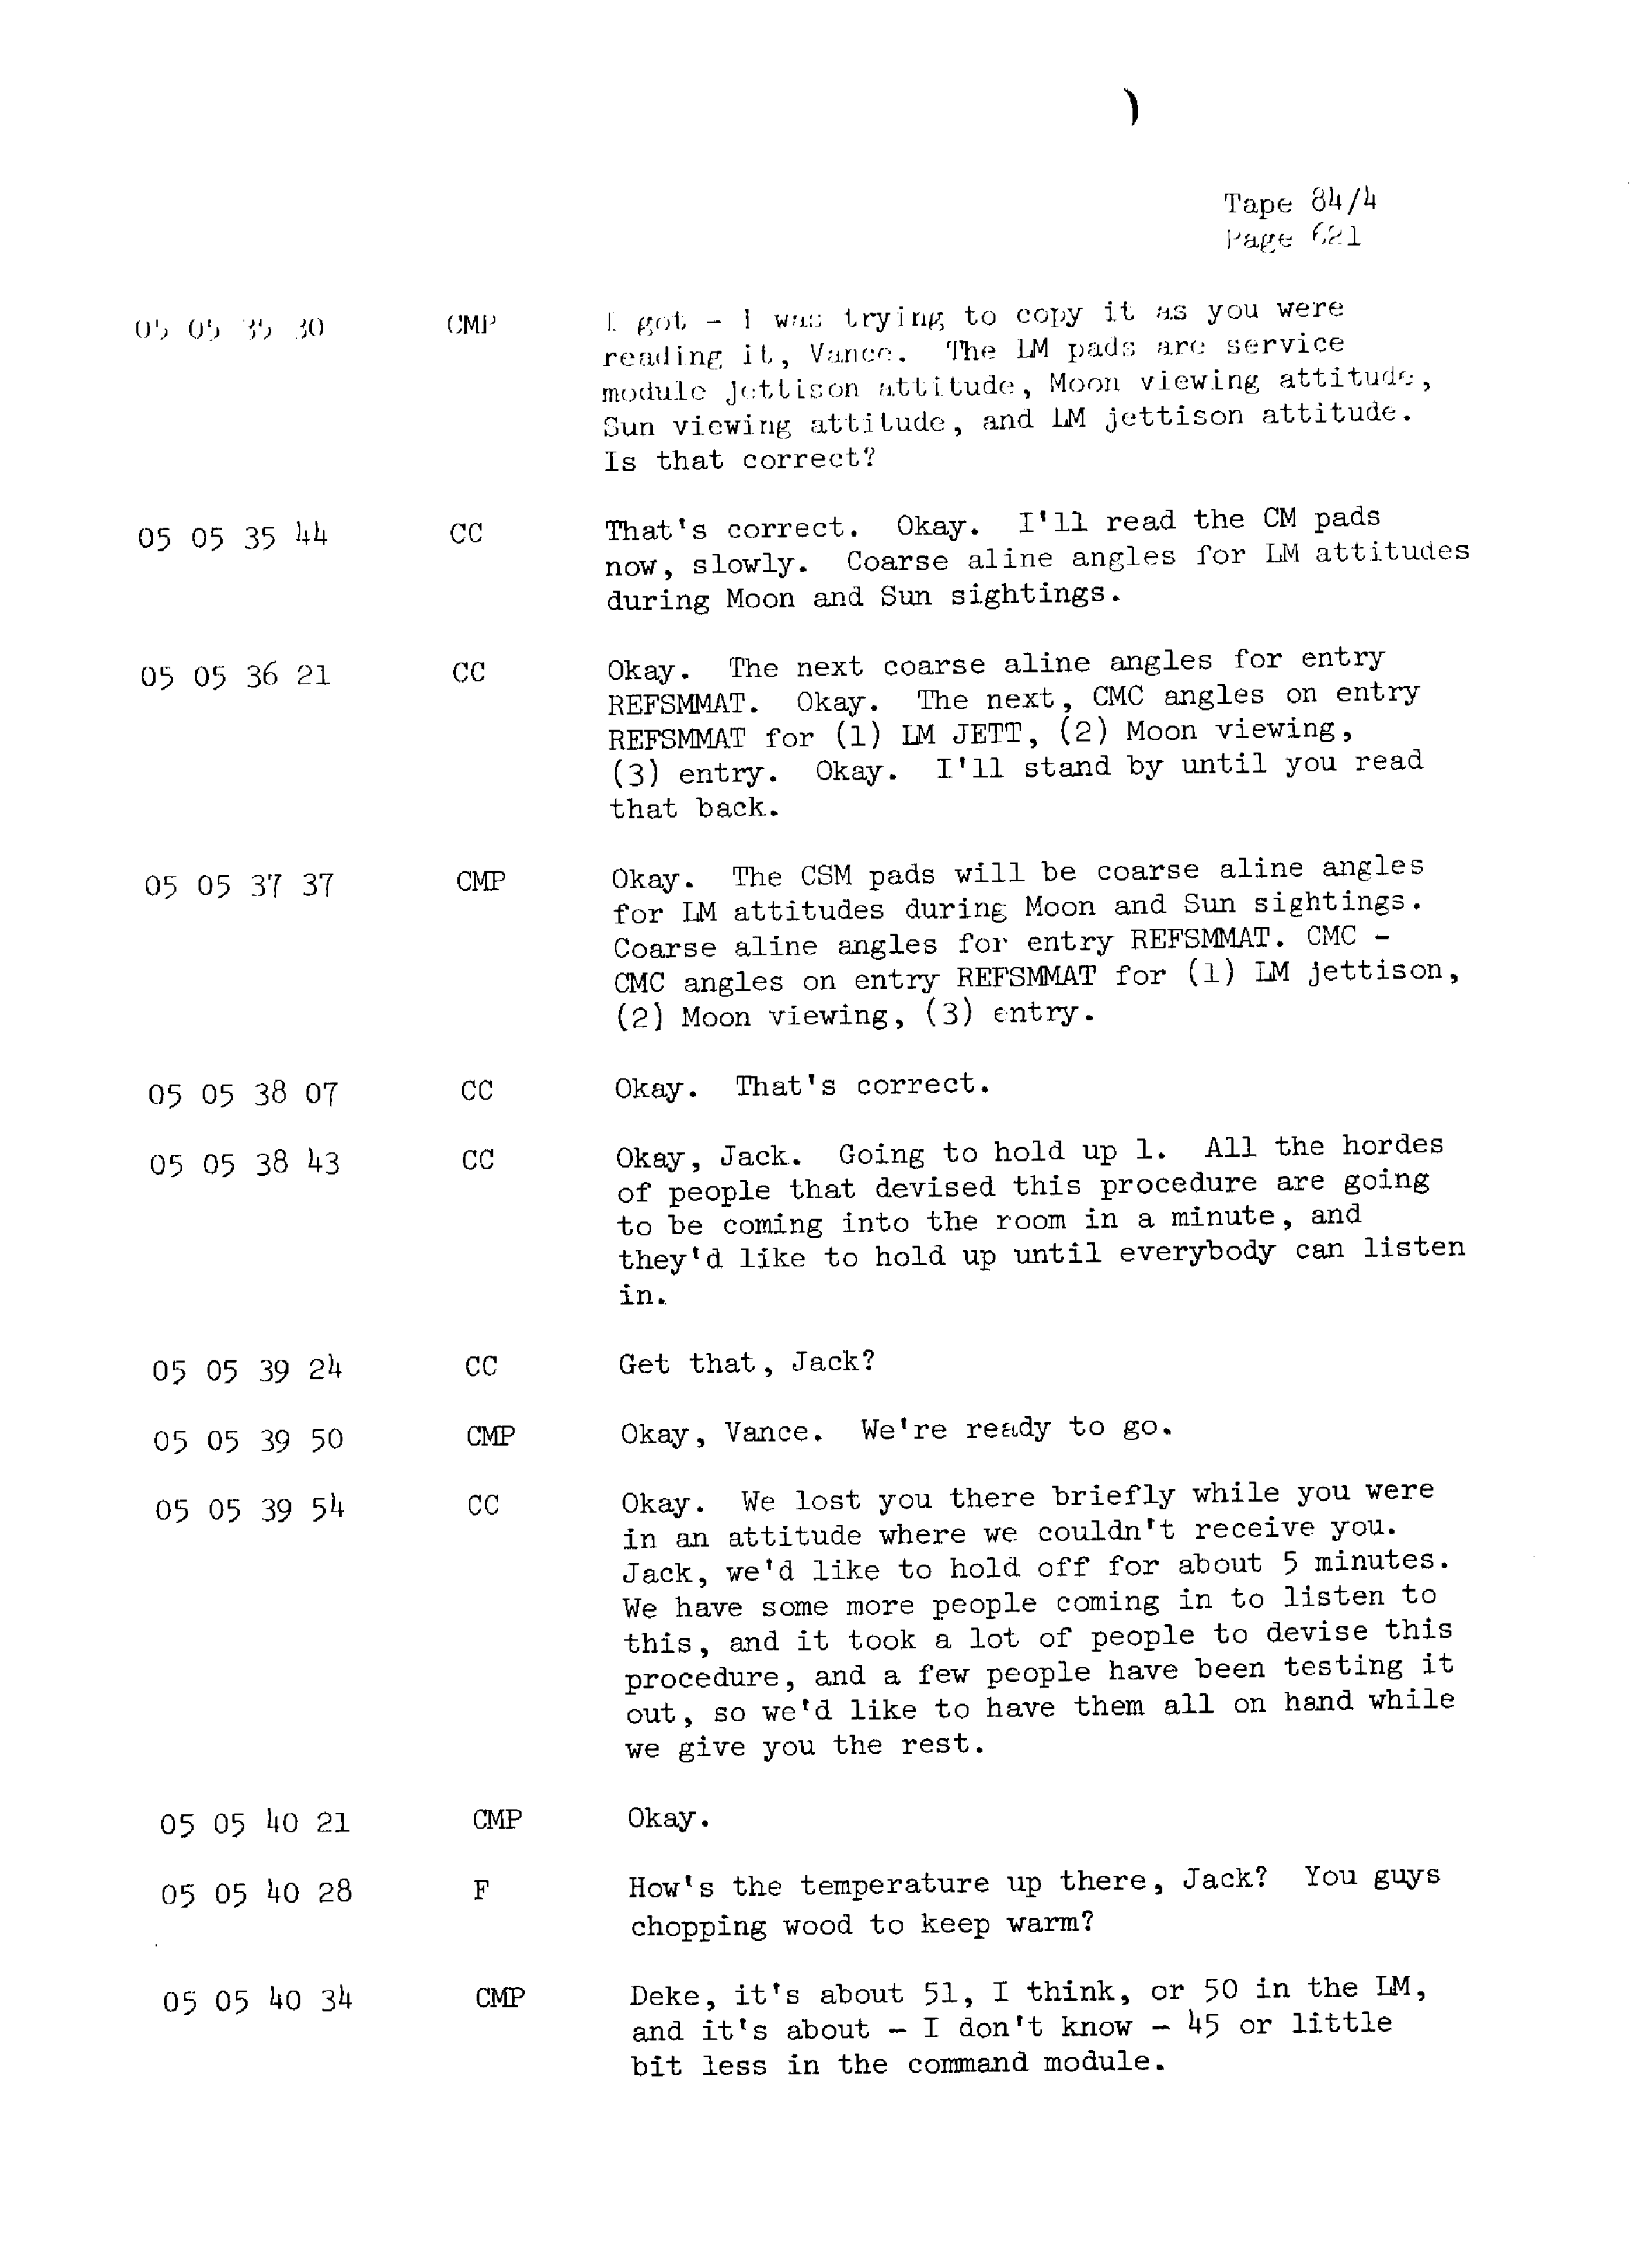 Page 628 of Apollo 13’s original transcript